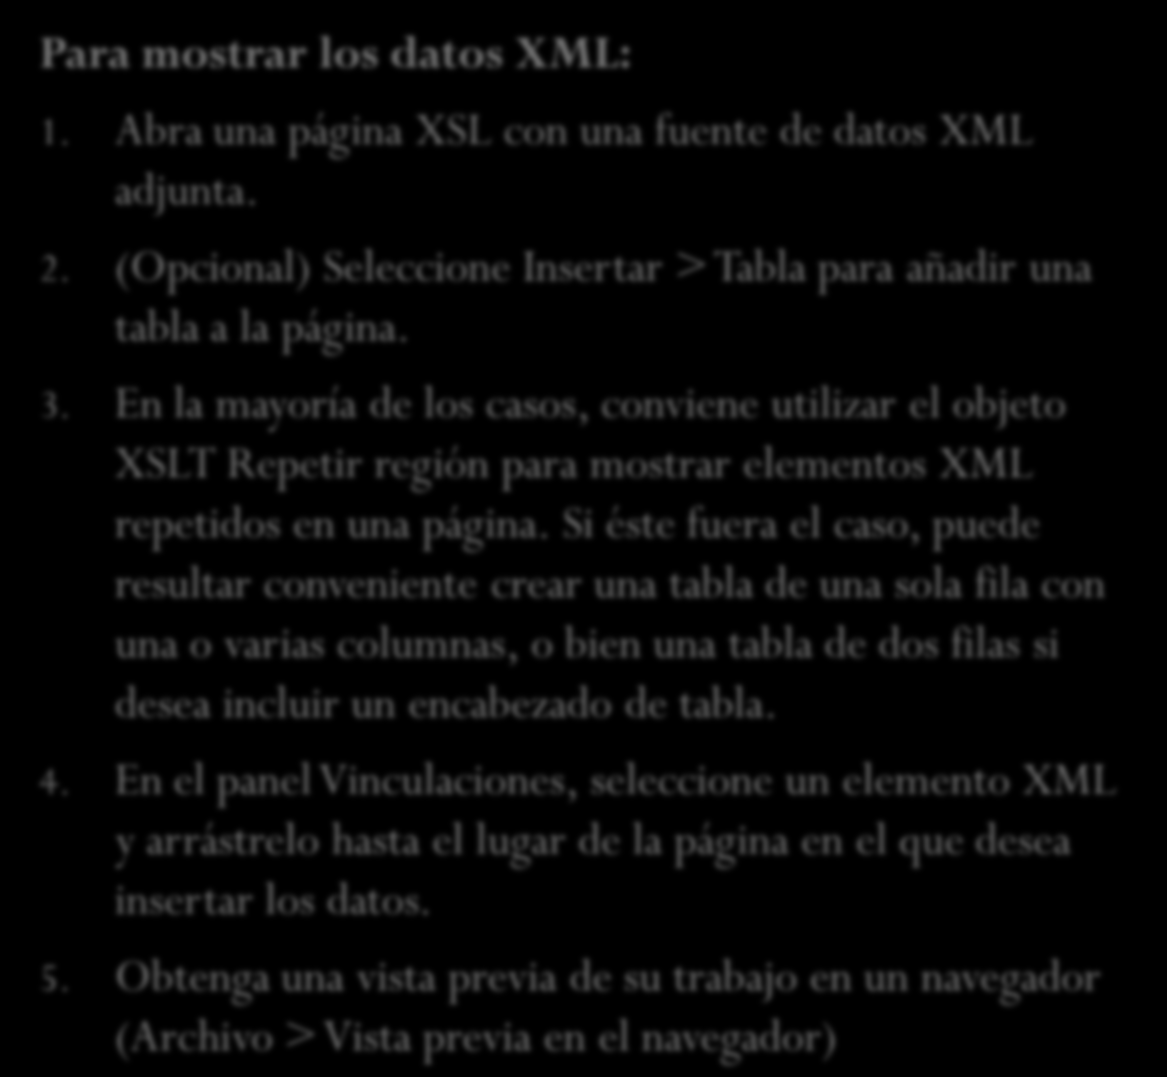 Visualización de datos XML en páginas XSL Para mostrar los datos XML: 1. Abra una página XSL con una fuente de datos XML adjunta. 2.